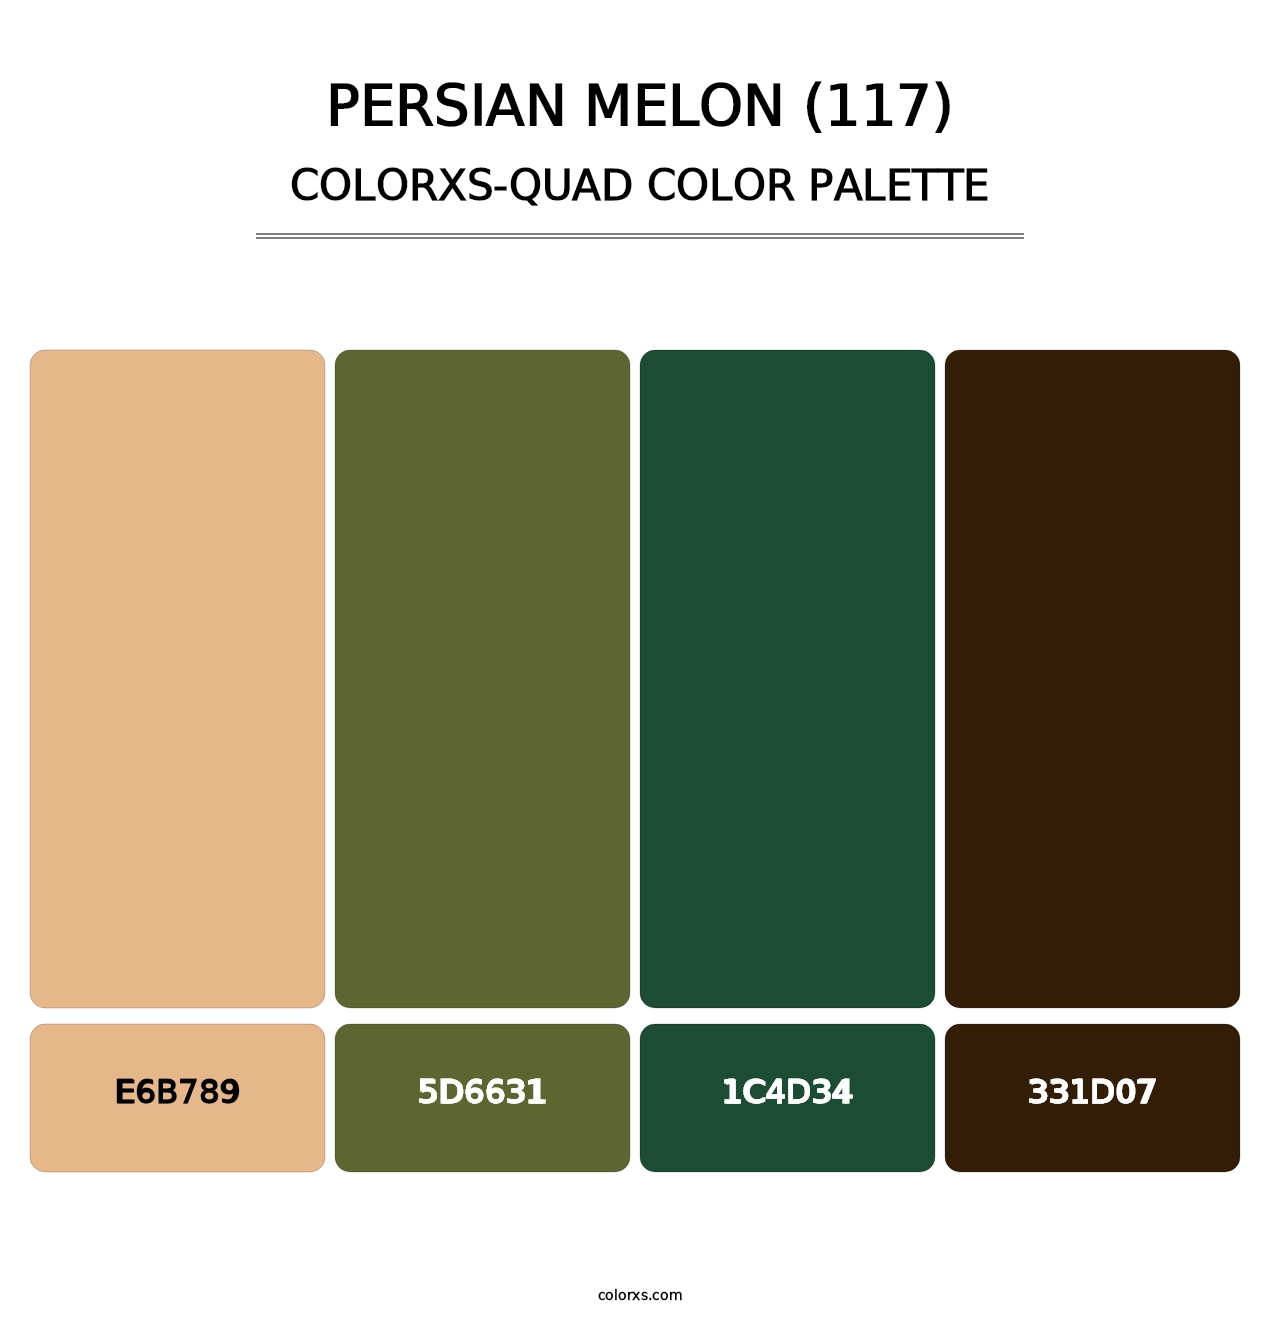 Persian Melon (117) - Colorxs Quad Palette